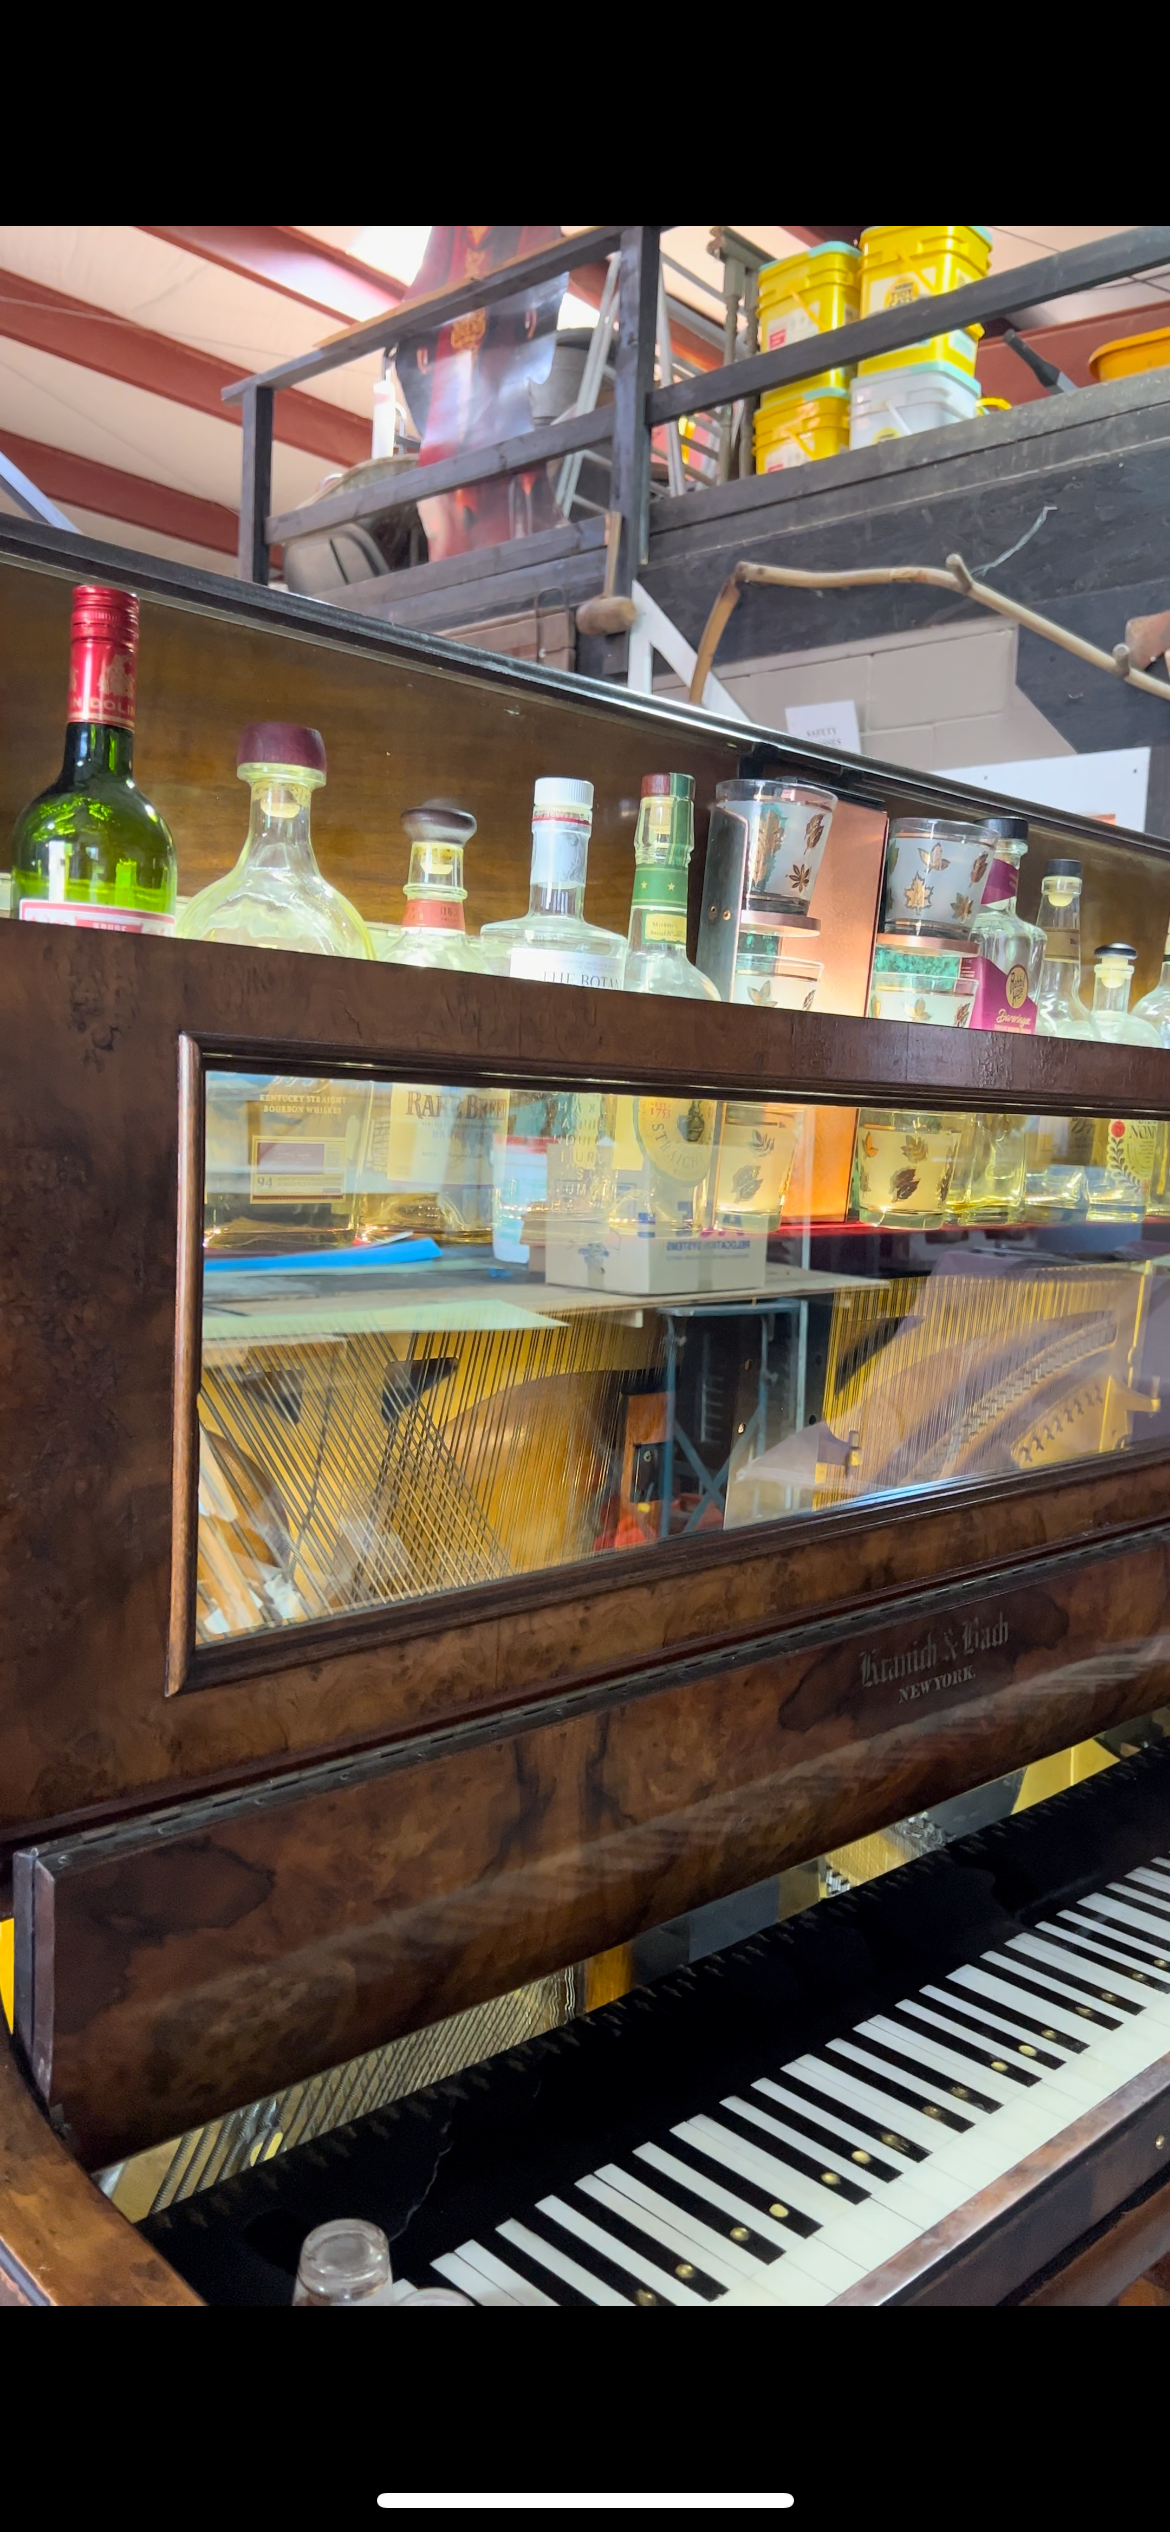 Piano bar